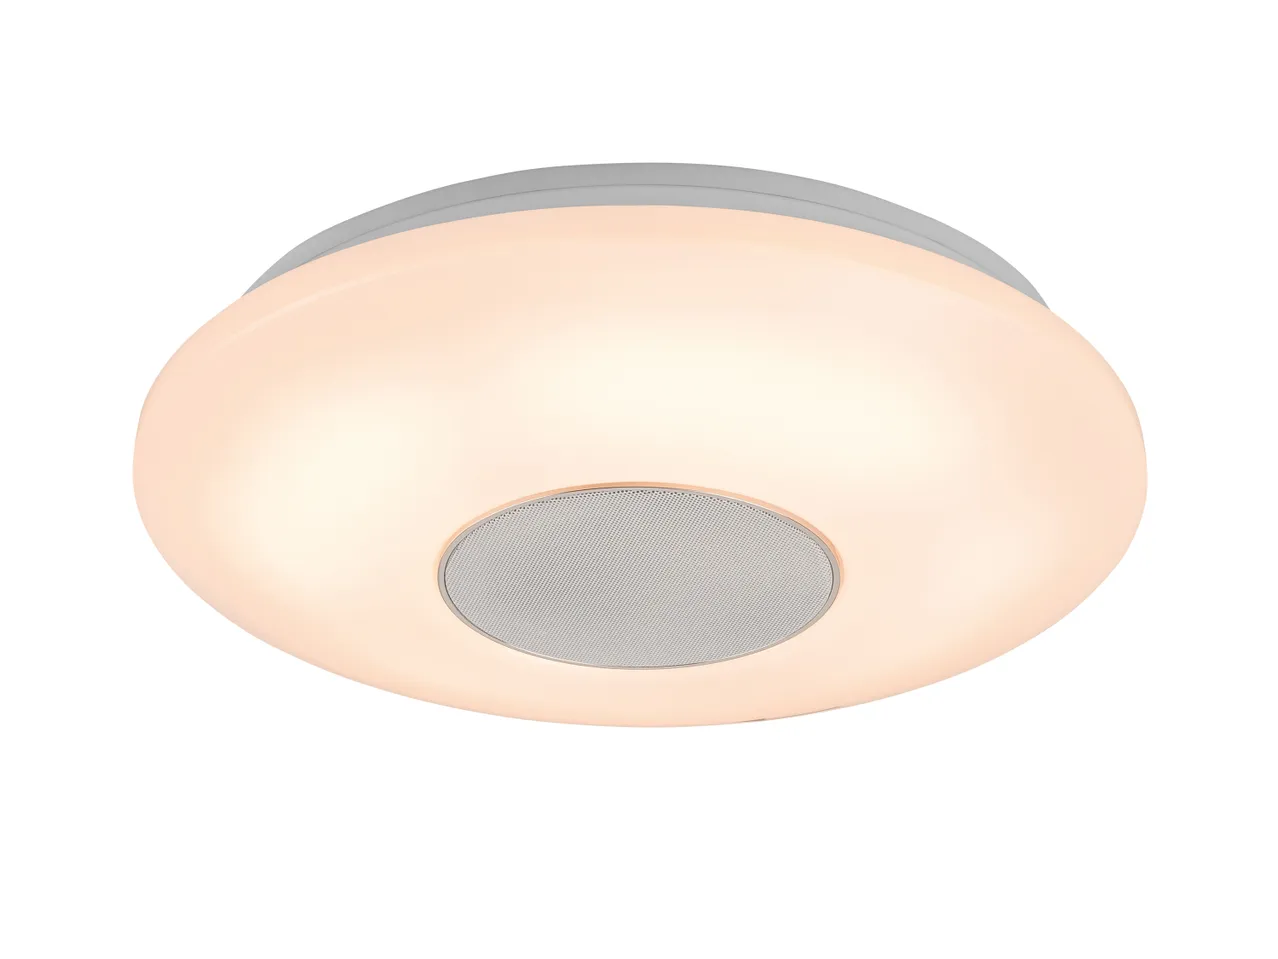 Lampada LED con altoparlante Bluetooth , prezzo 29,99 EUR 
Lampada LED con altoparlante ...